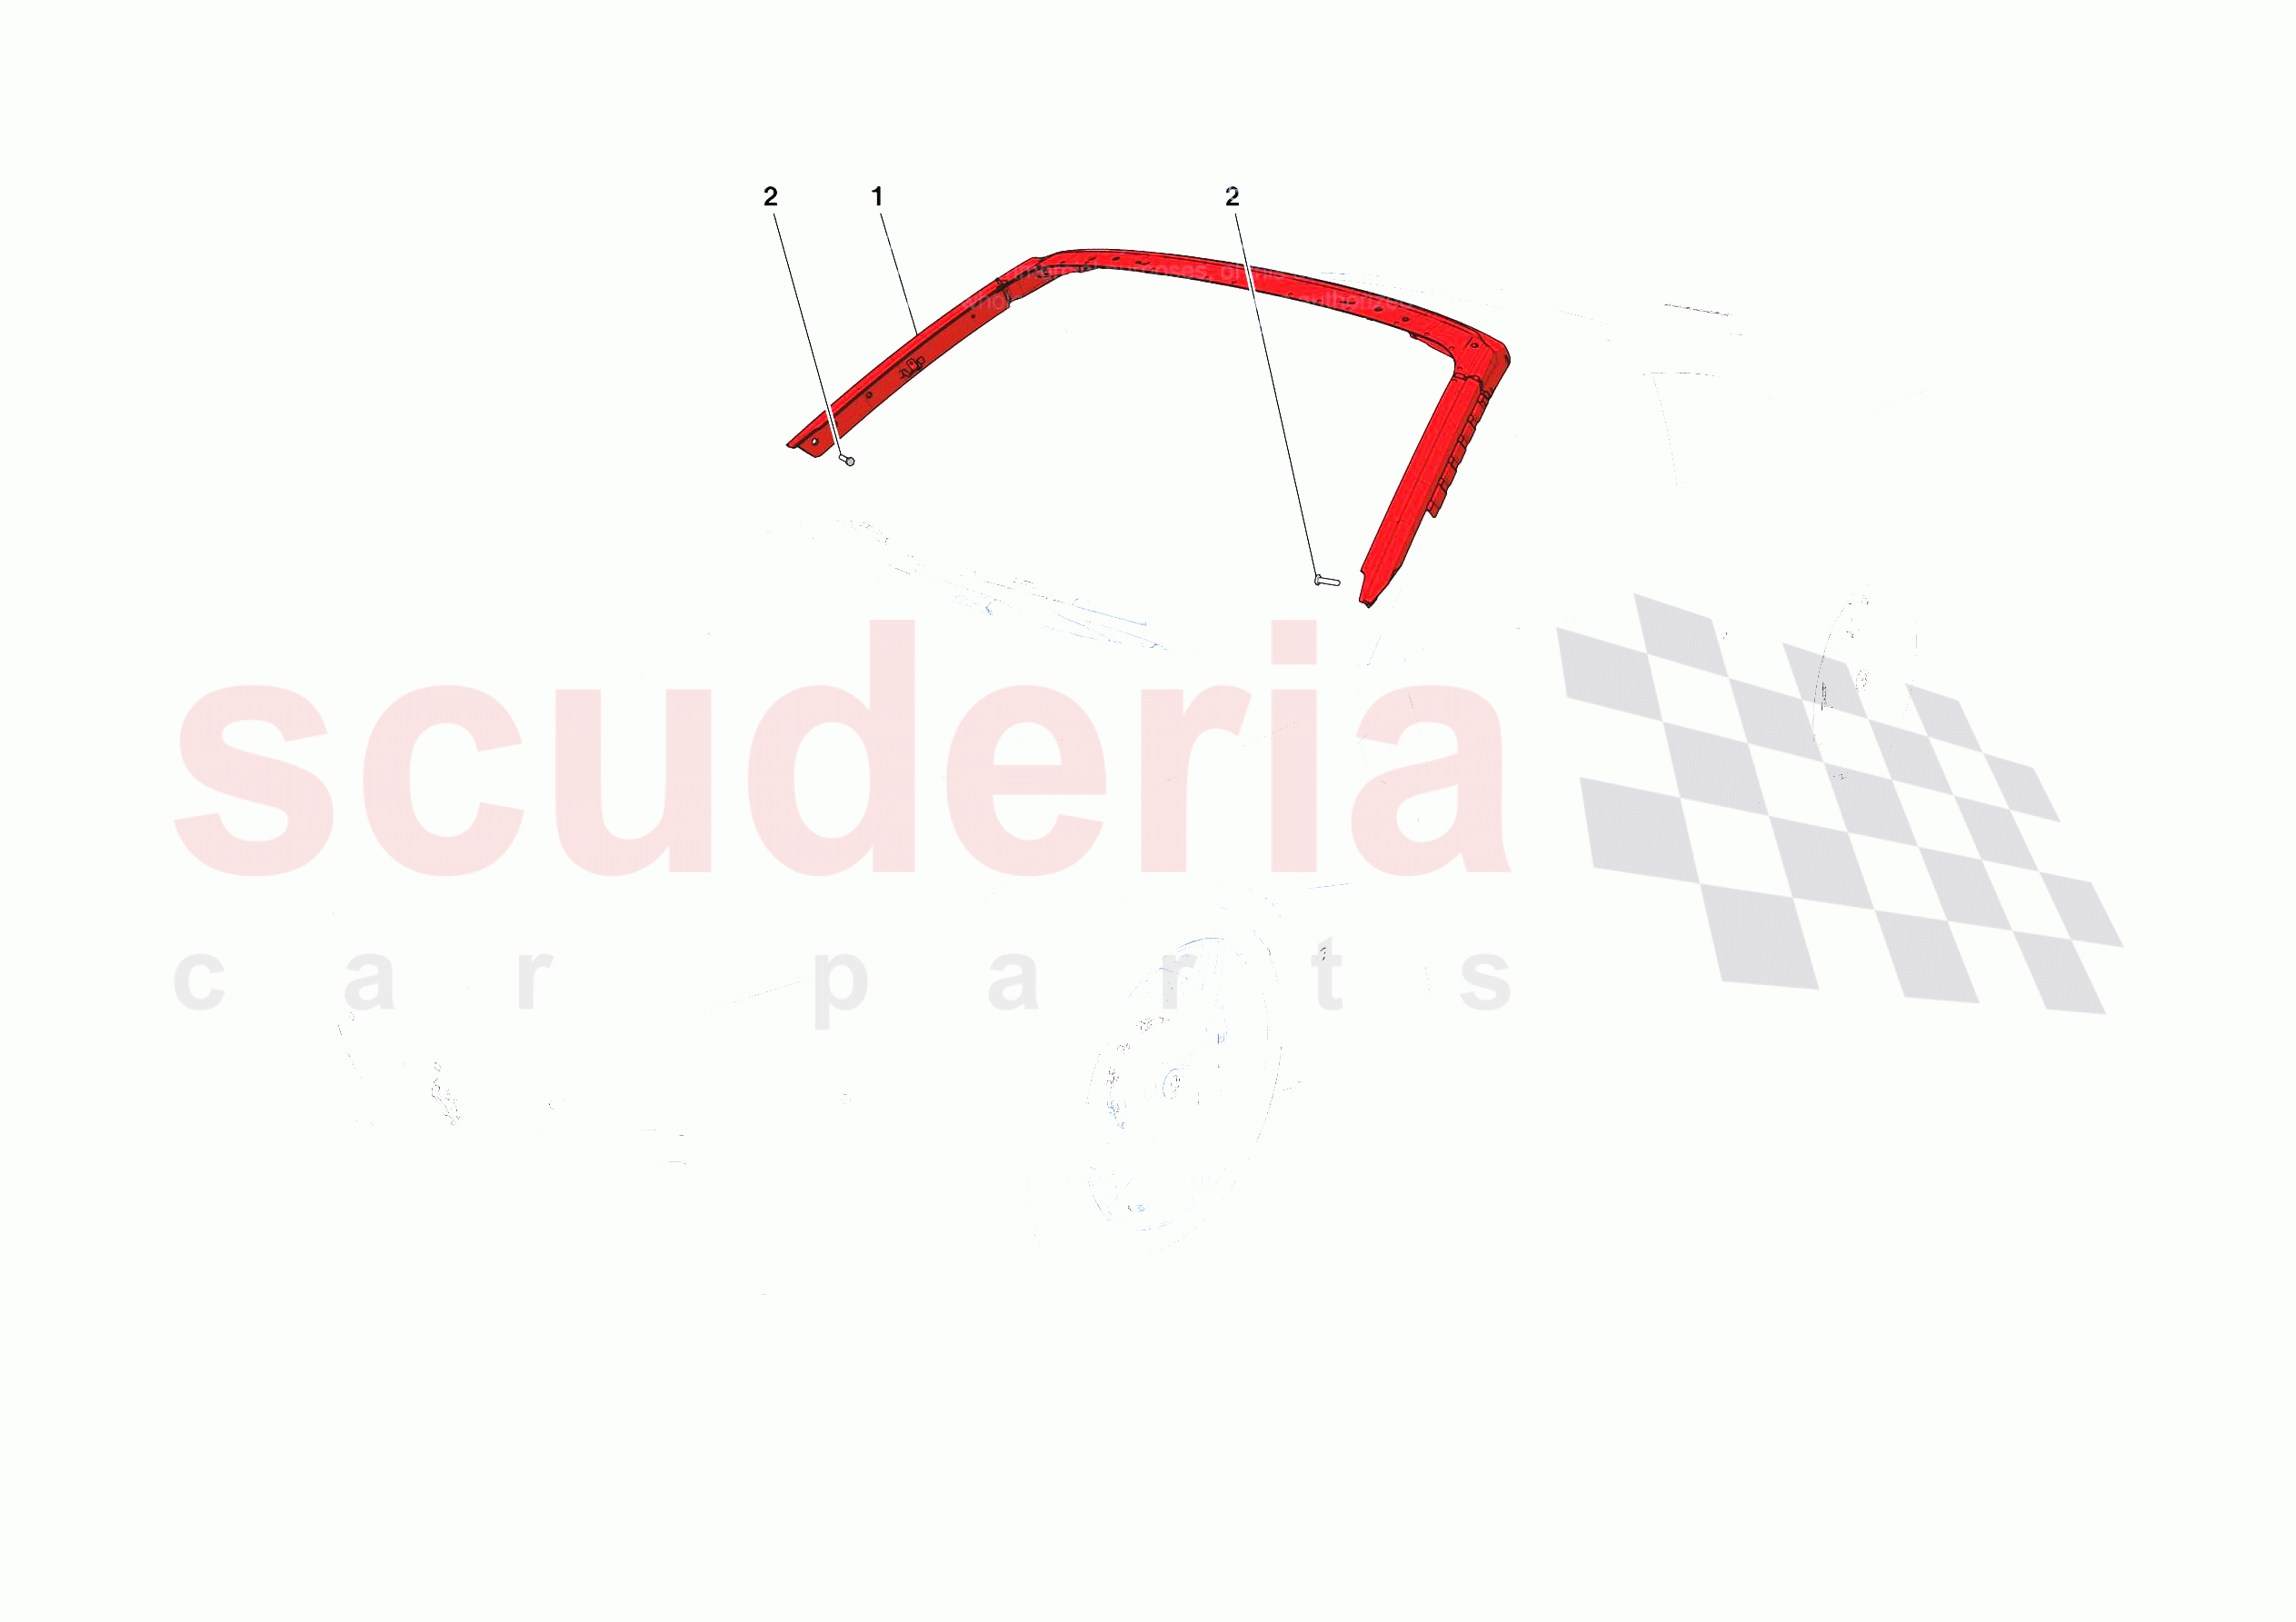 HEADLINER of Ferrari Ferrari Portofino USA